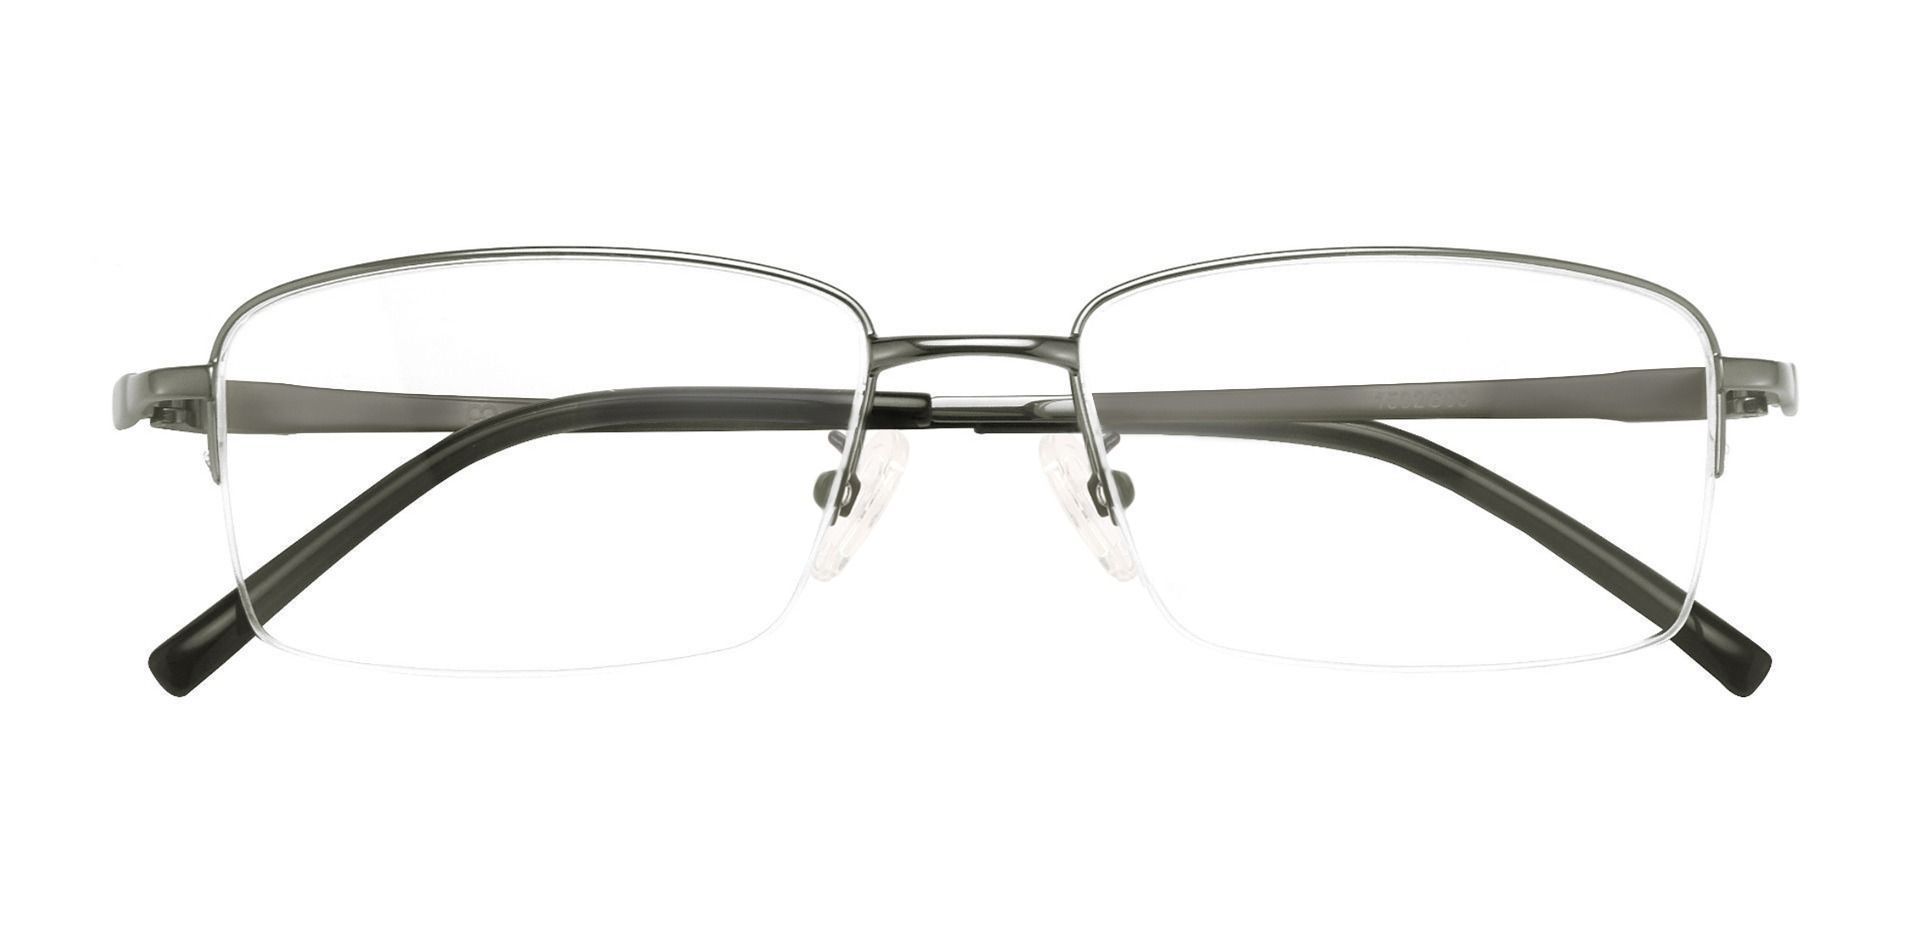 Friar Rectangle Eyeglasses Frame - Gray